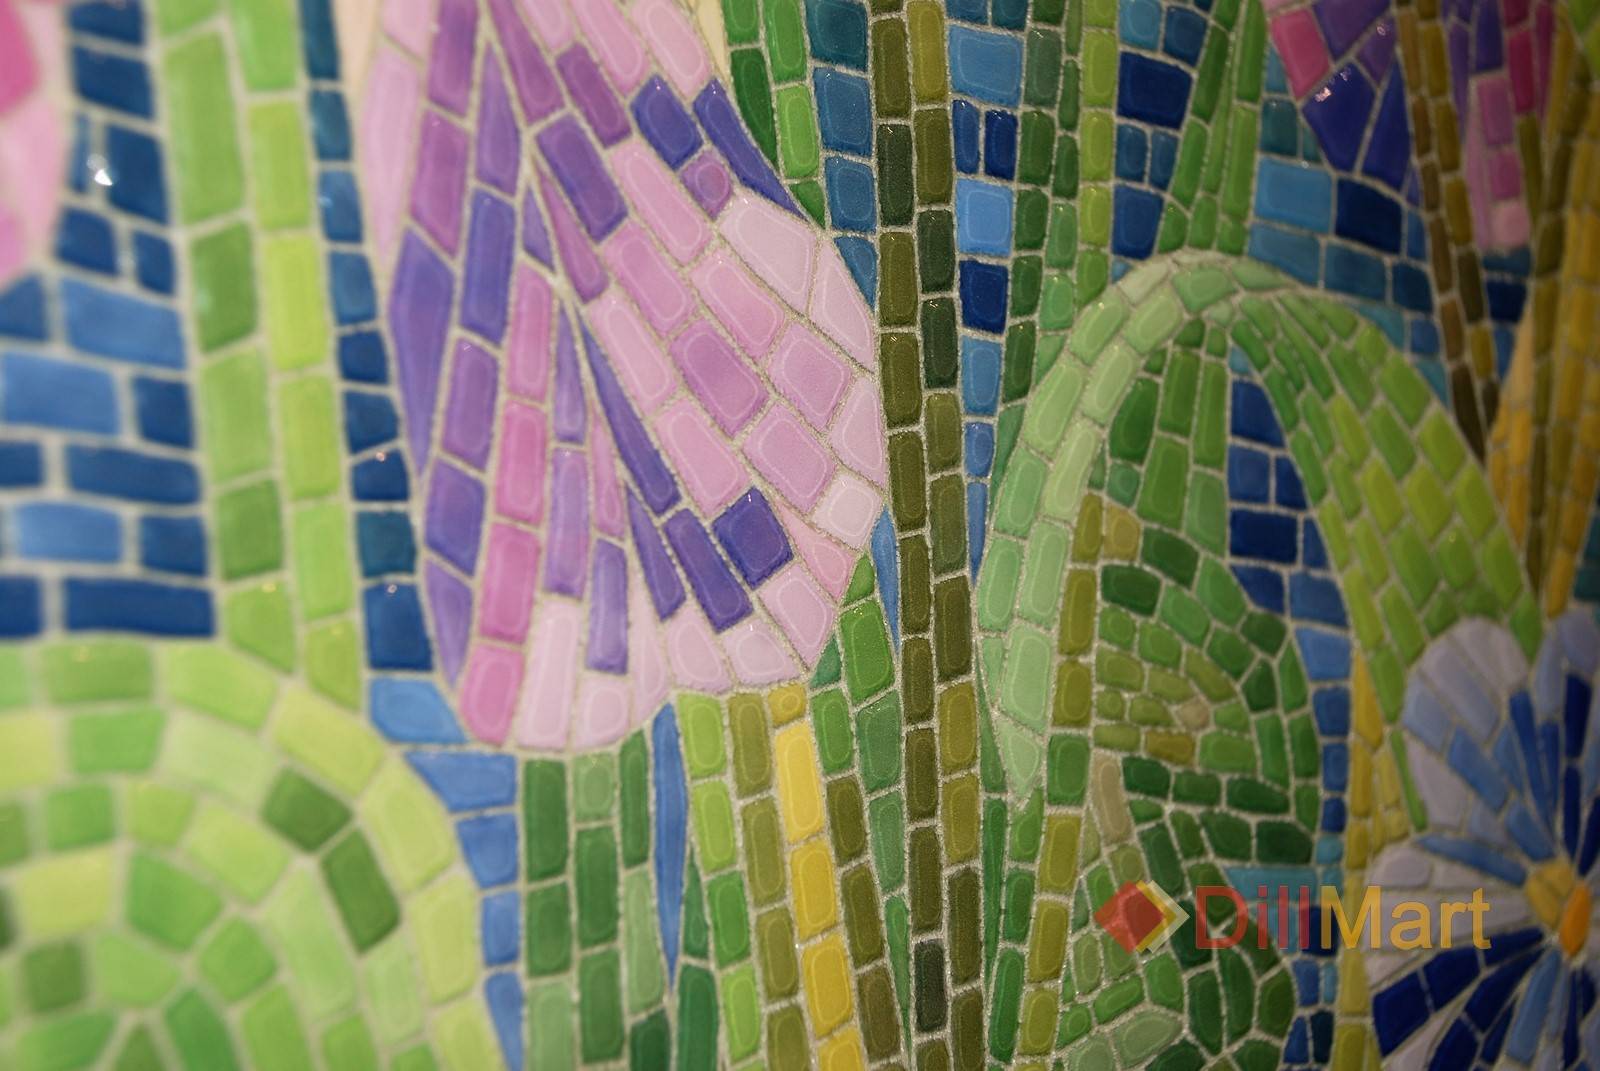 Мозаика в интерьере: варианты отделки, виды, формы плитки, цвет, дизайн и рисунки